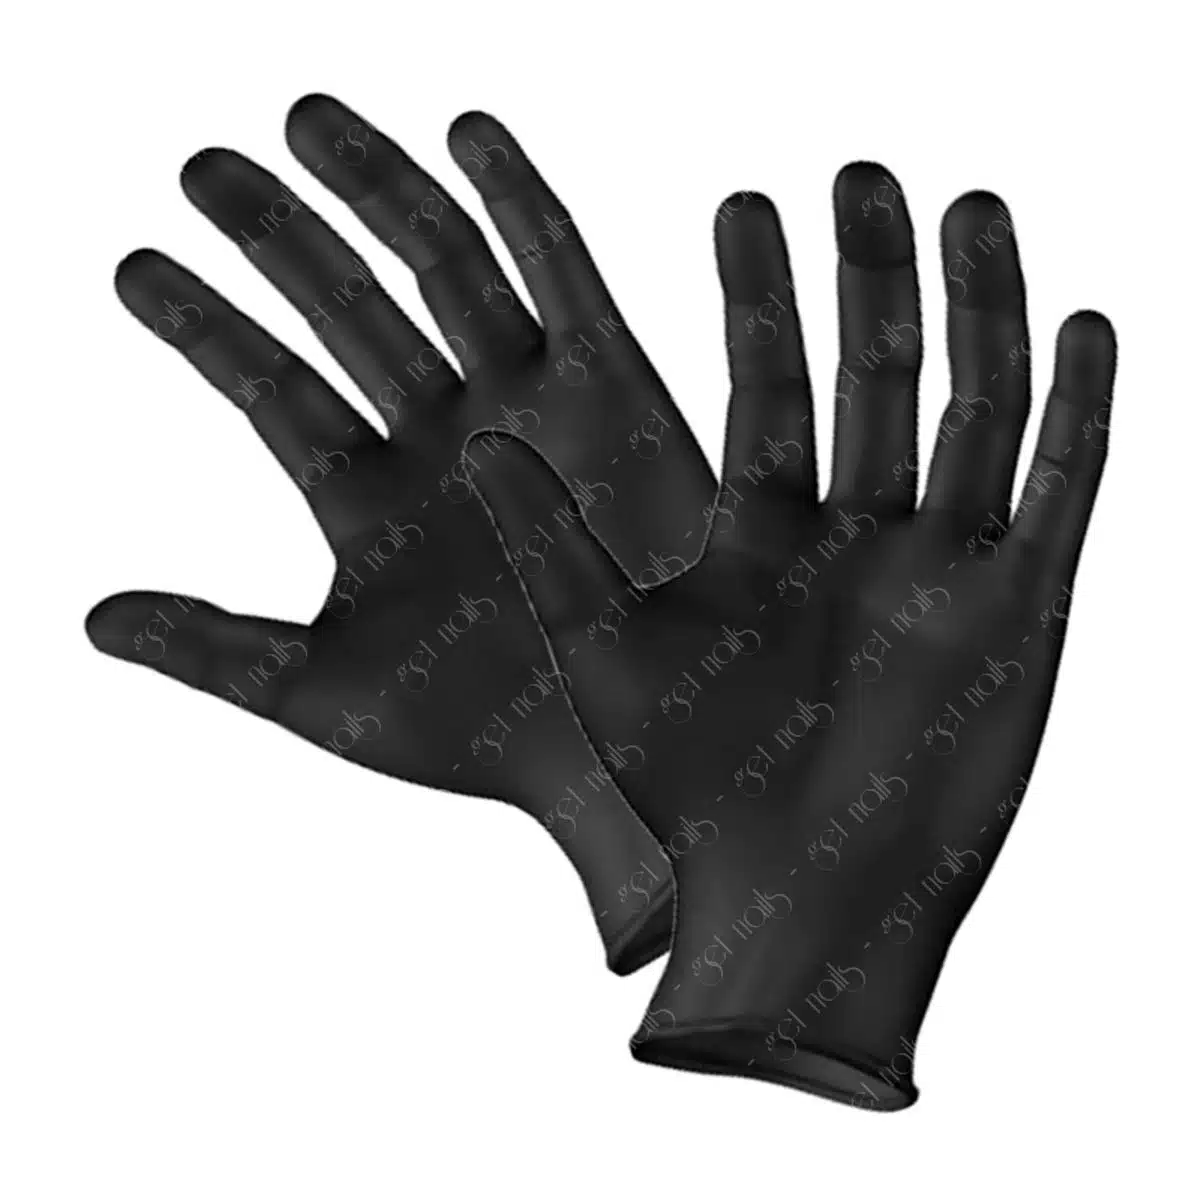 Get Nails Austria - Hygiene gloves size M, 100 pcs.